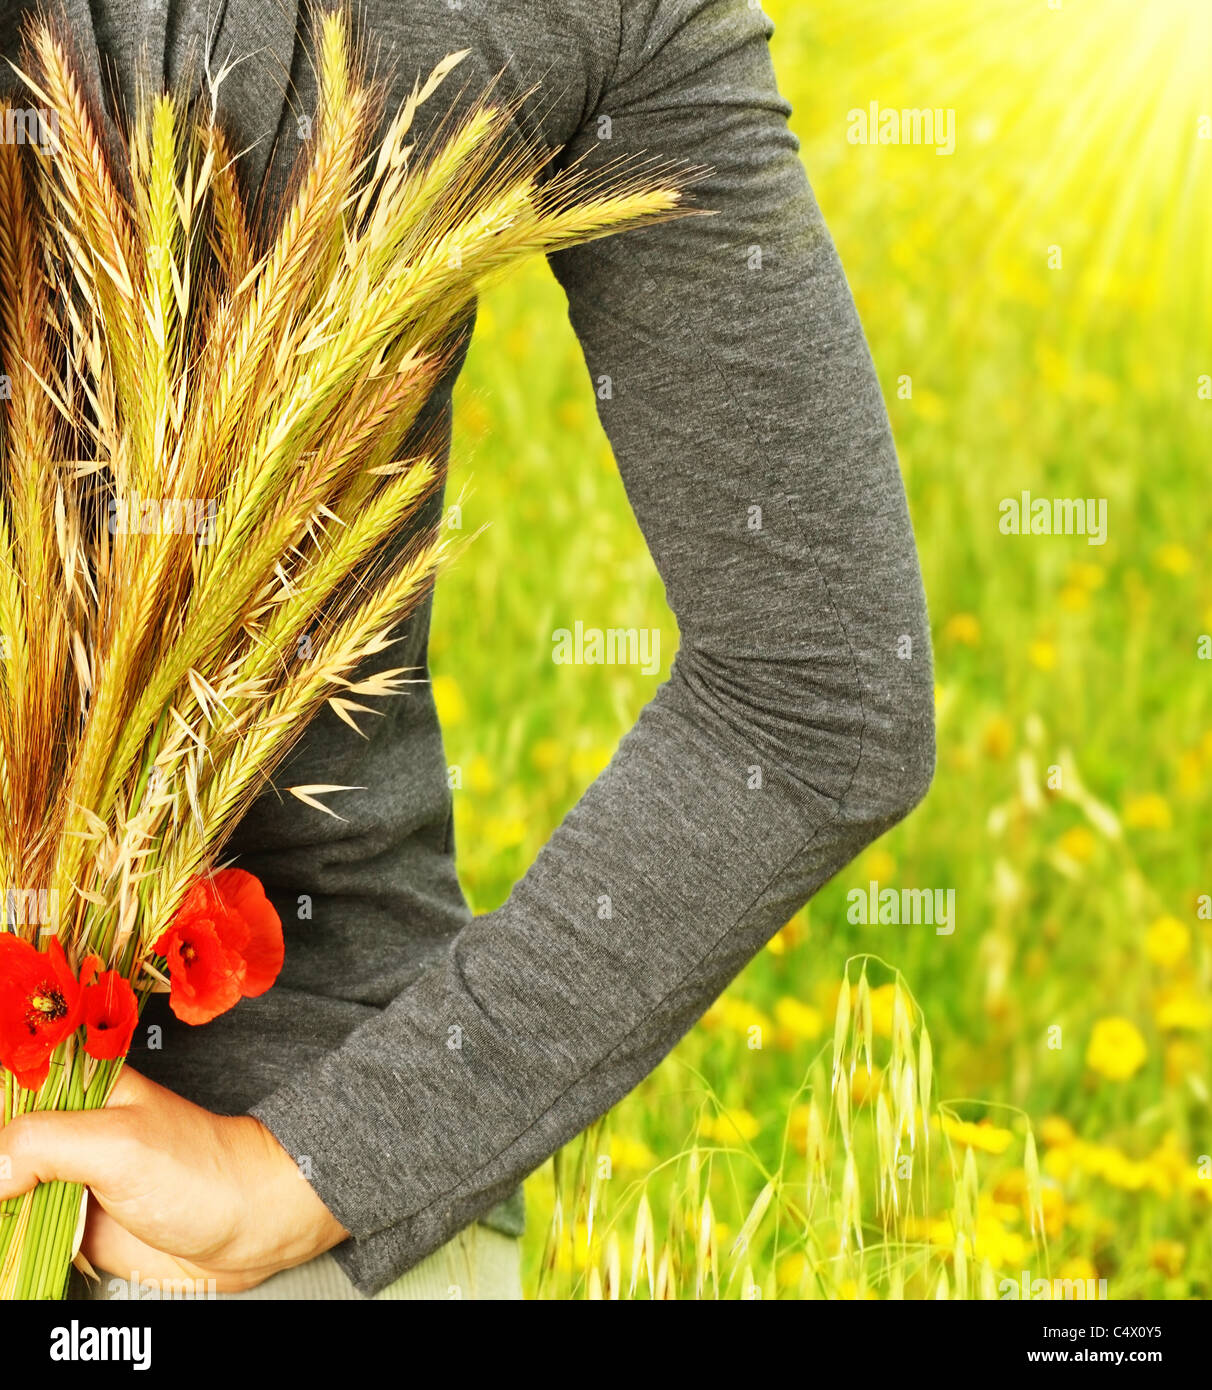 Weizen-Blumenstrauß in Mädchen Hand, Ernte-Konzept Stockfoto